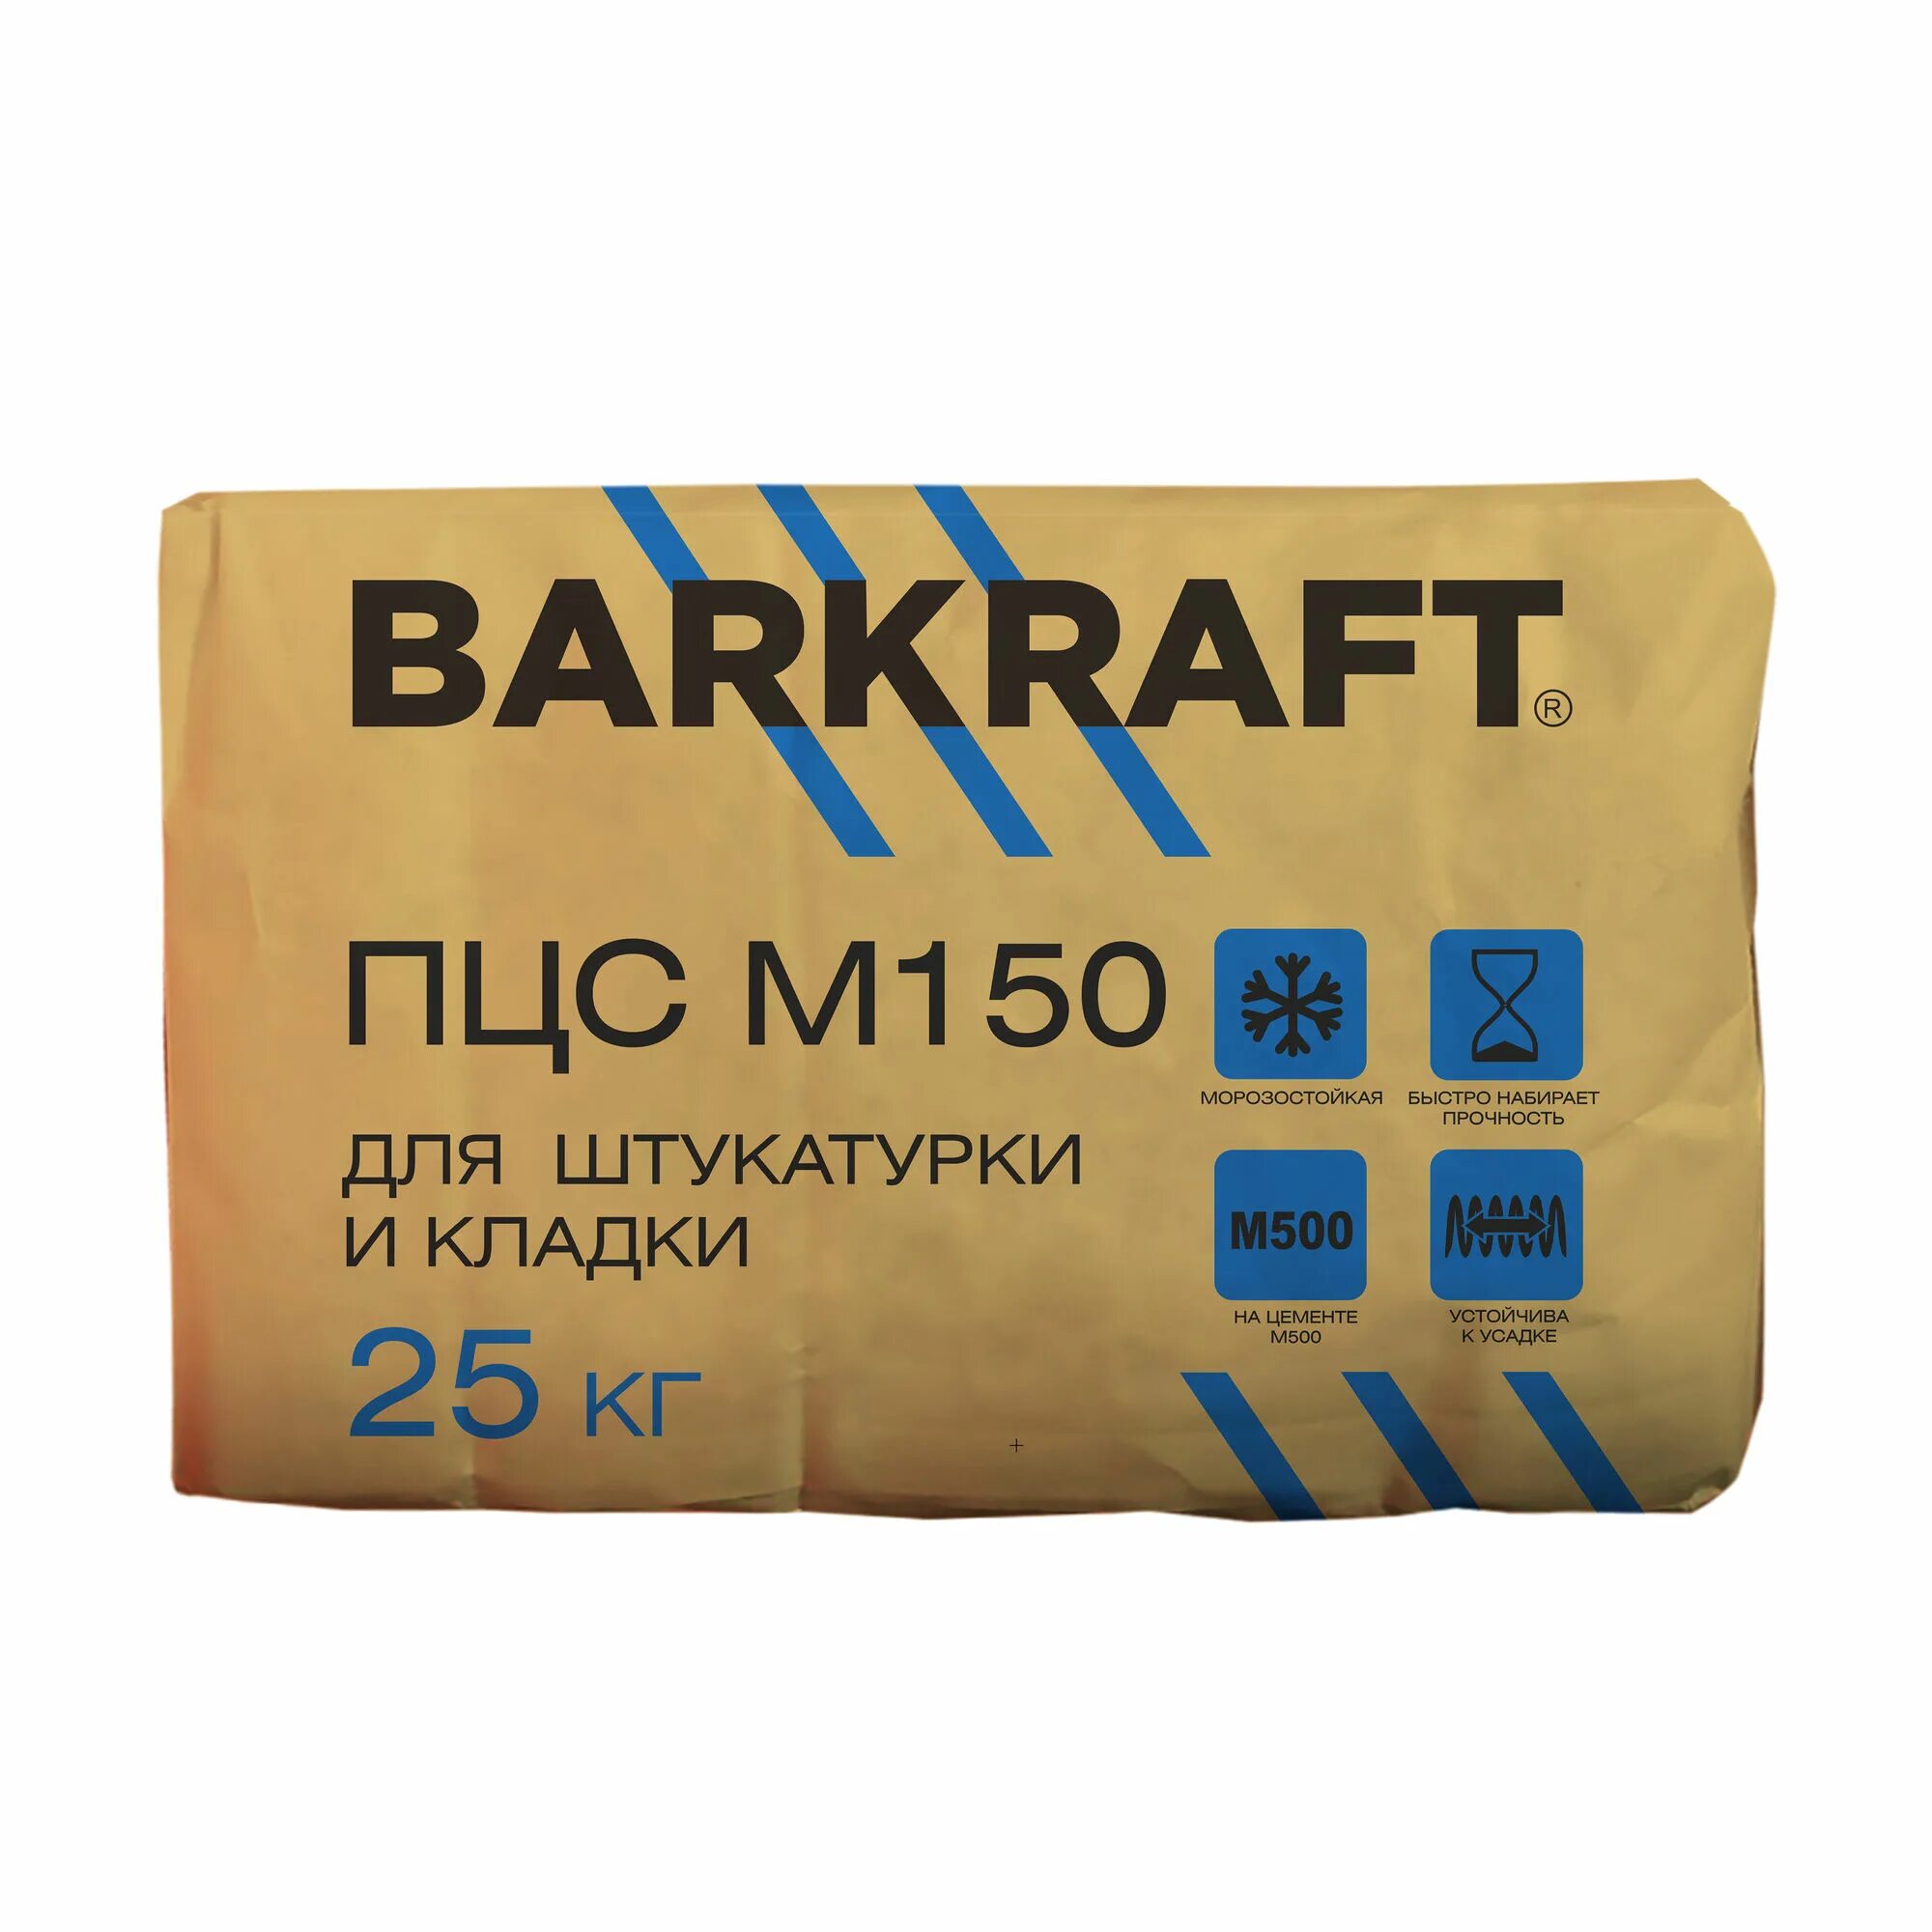 Купить пескобетон в леруа. BARKRAFT штукатурка гипсовая 30 кг. Смесь ПЦС-150 25кг. ПЦС 150 (25кг) Баркрафт. Пескобетон BARKRAFT М-300 25кг.